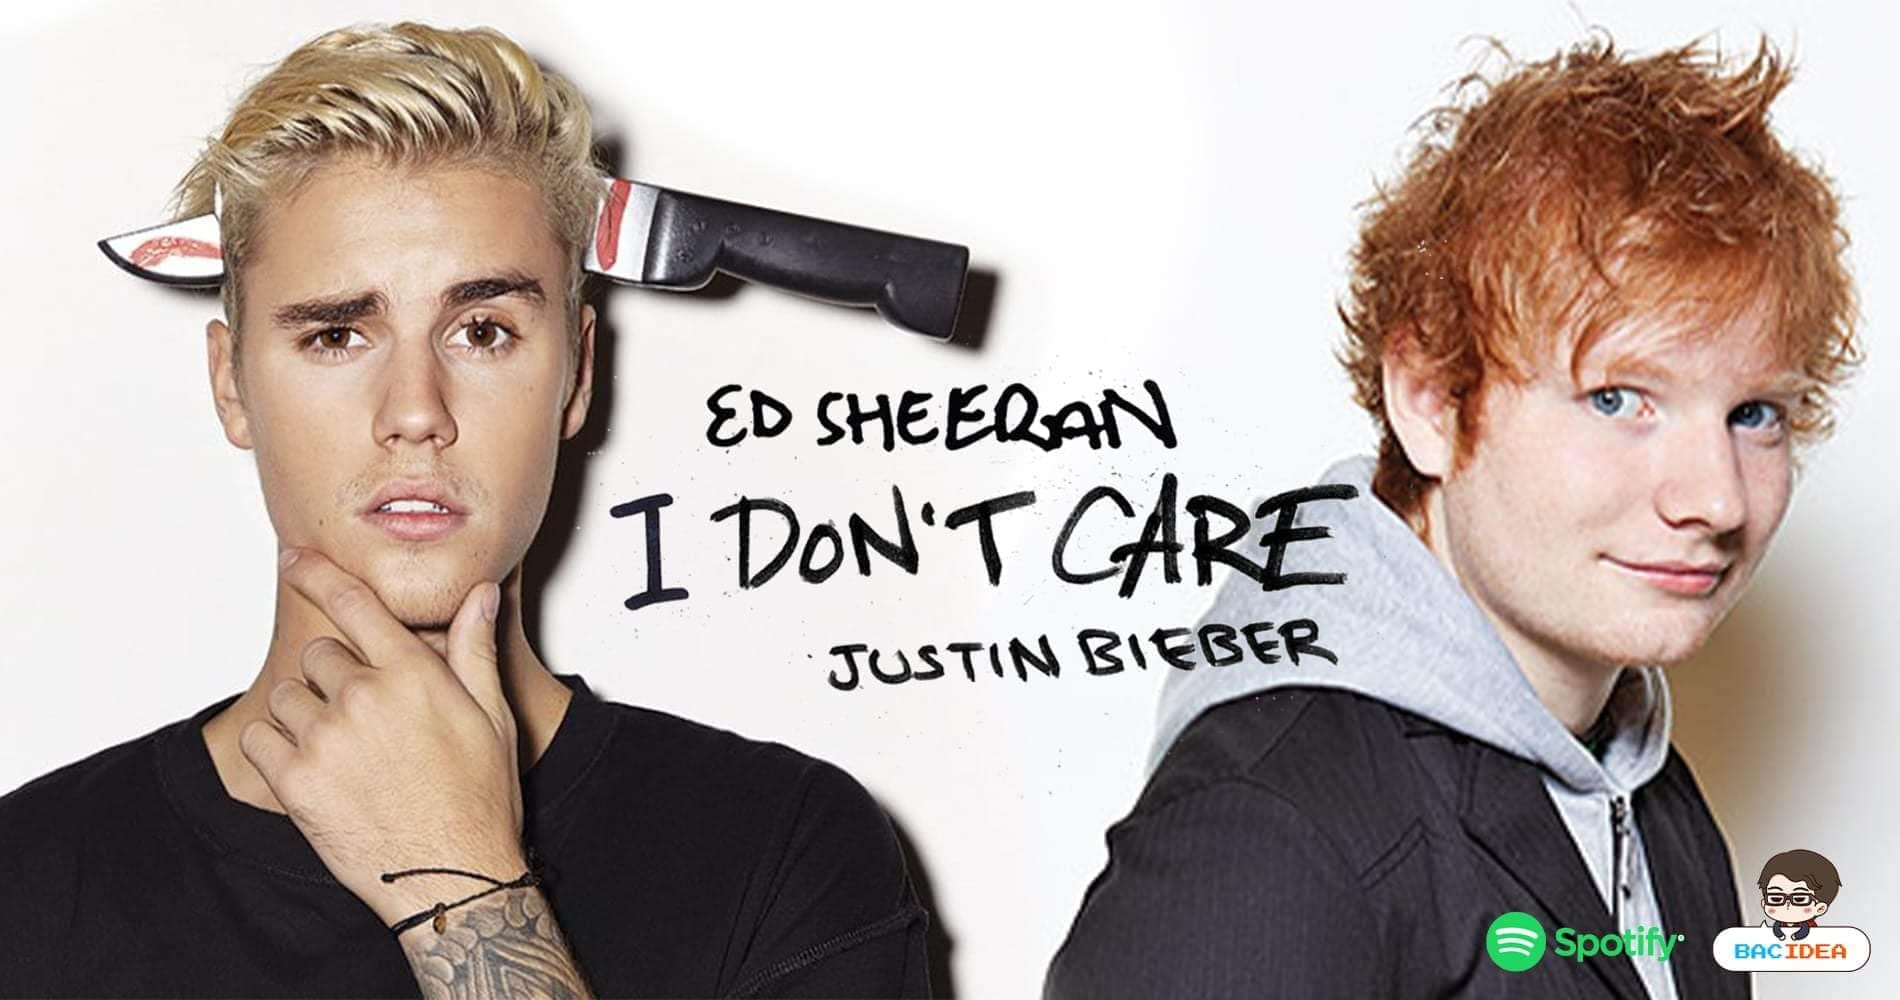 Spotify เผยสถิติที่น่าสนใจของสองหนุ่ม Ed Sheeran และ Justin Bieber เพื่อฉลองซิงเกิ้ลใหม่ I Don’t Care 1